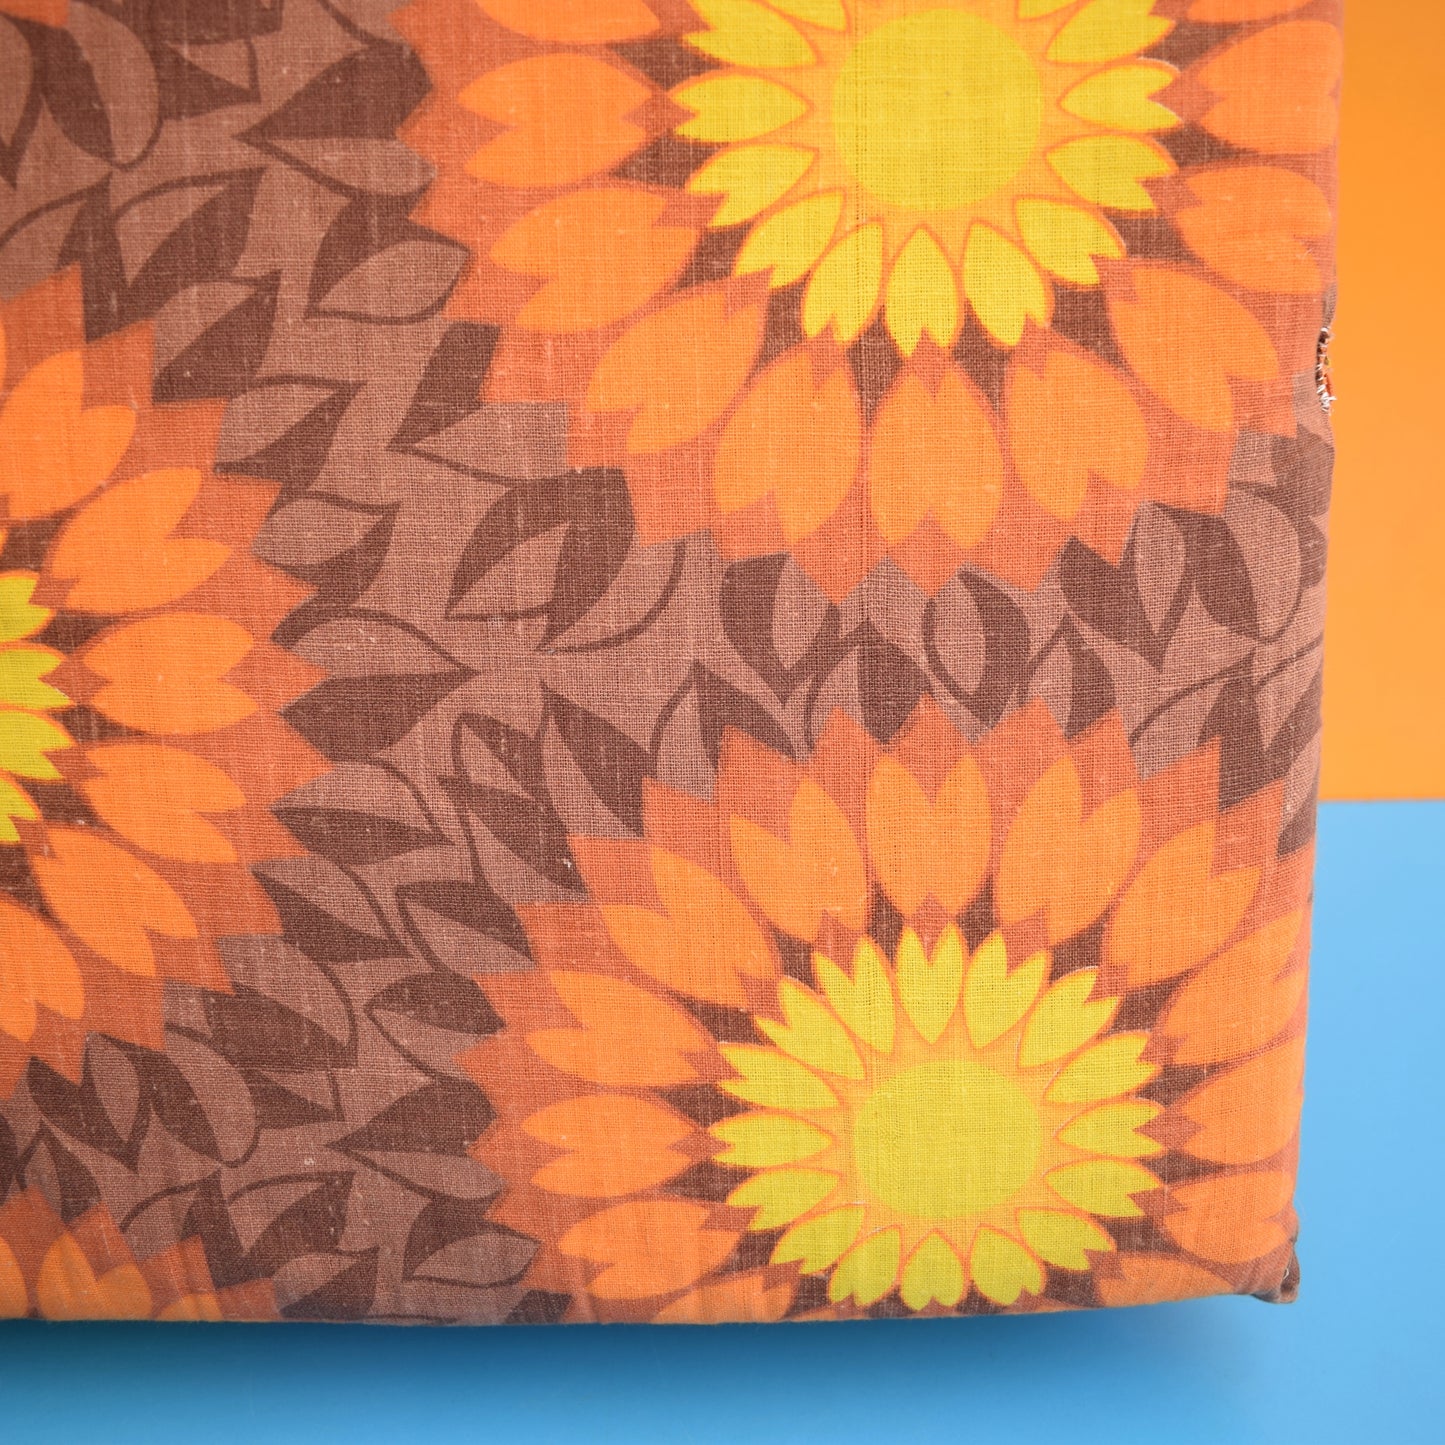 Vintage 1960s Long Folding Cushion - Orange Flower